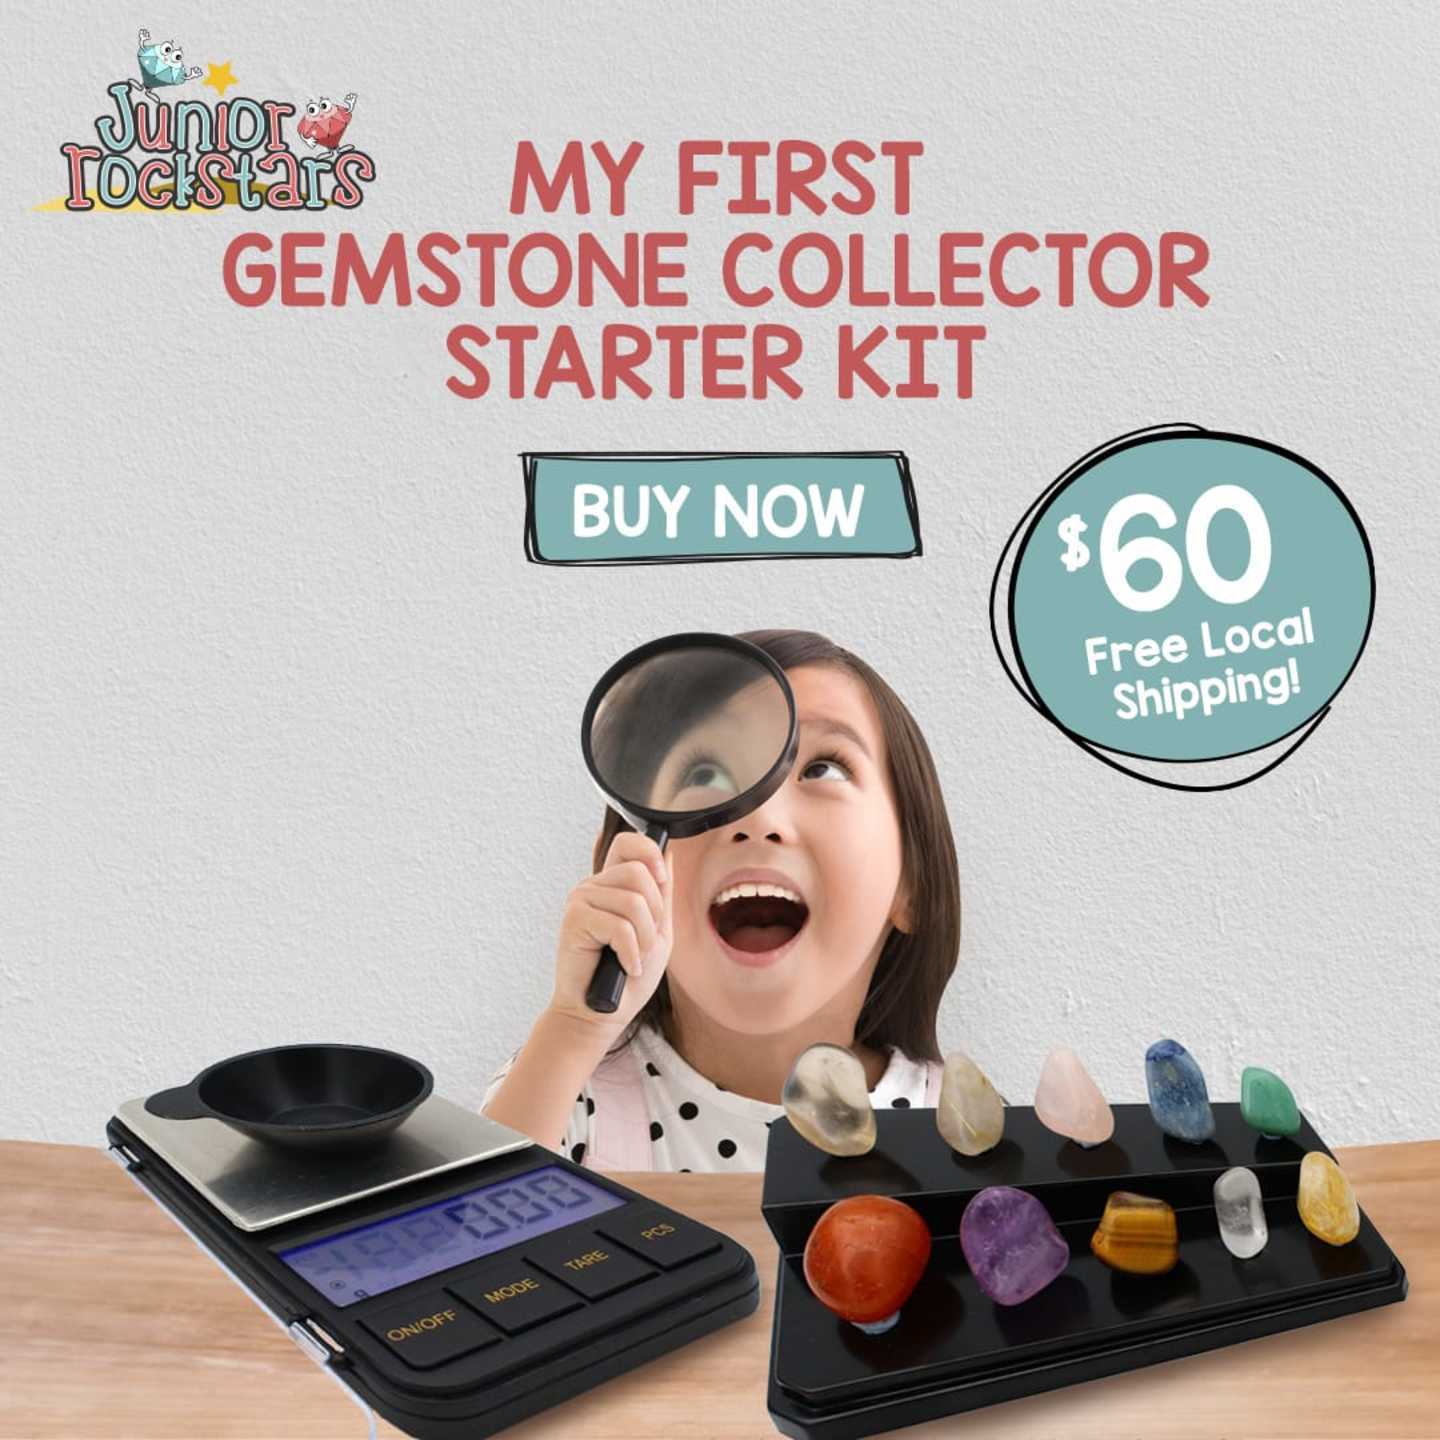 Gemstone Collector Kit Starter Kit